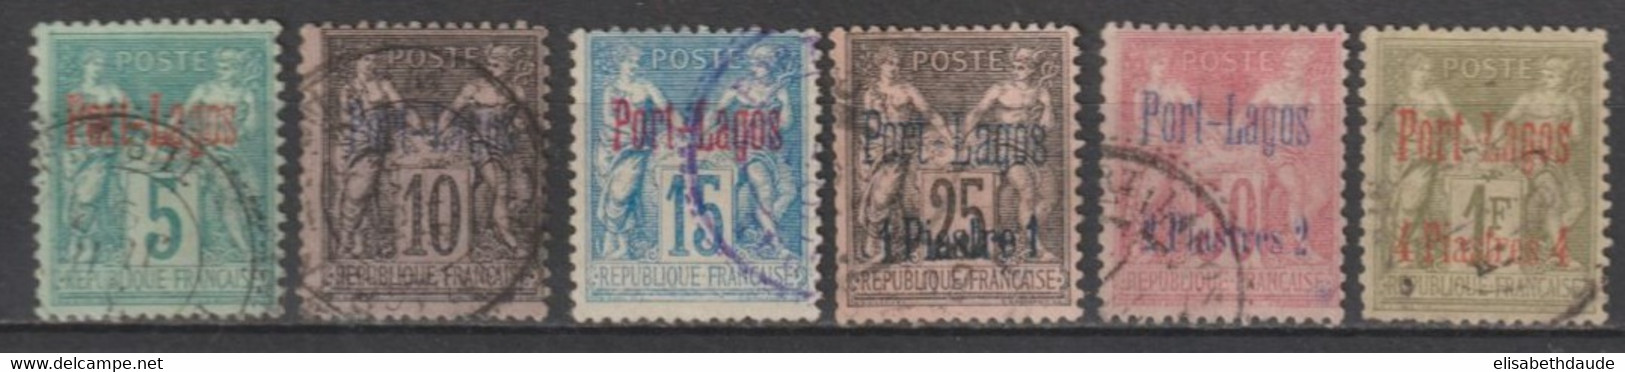 PORT LAGOS - 1893 - SERIE COMPLETE YVERT N° 1/6 OBLITERES - COTE = 500 EUR. - Gebruikt